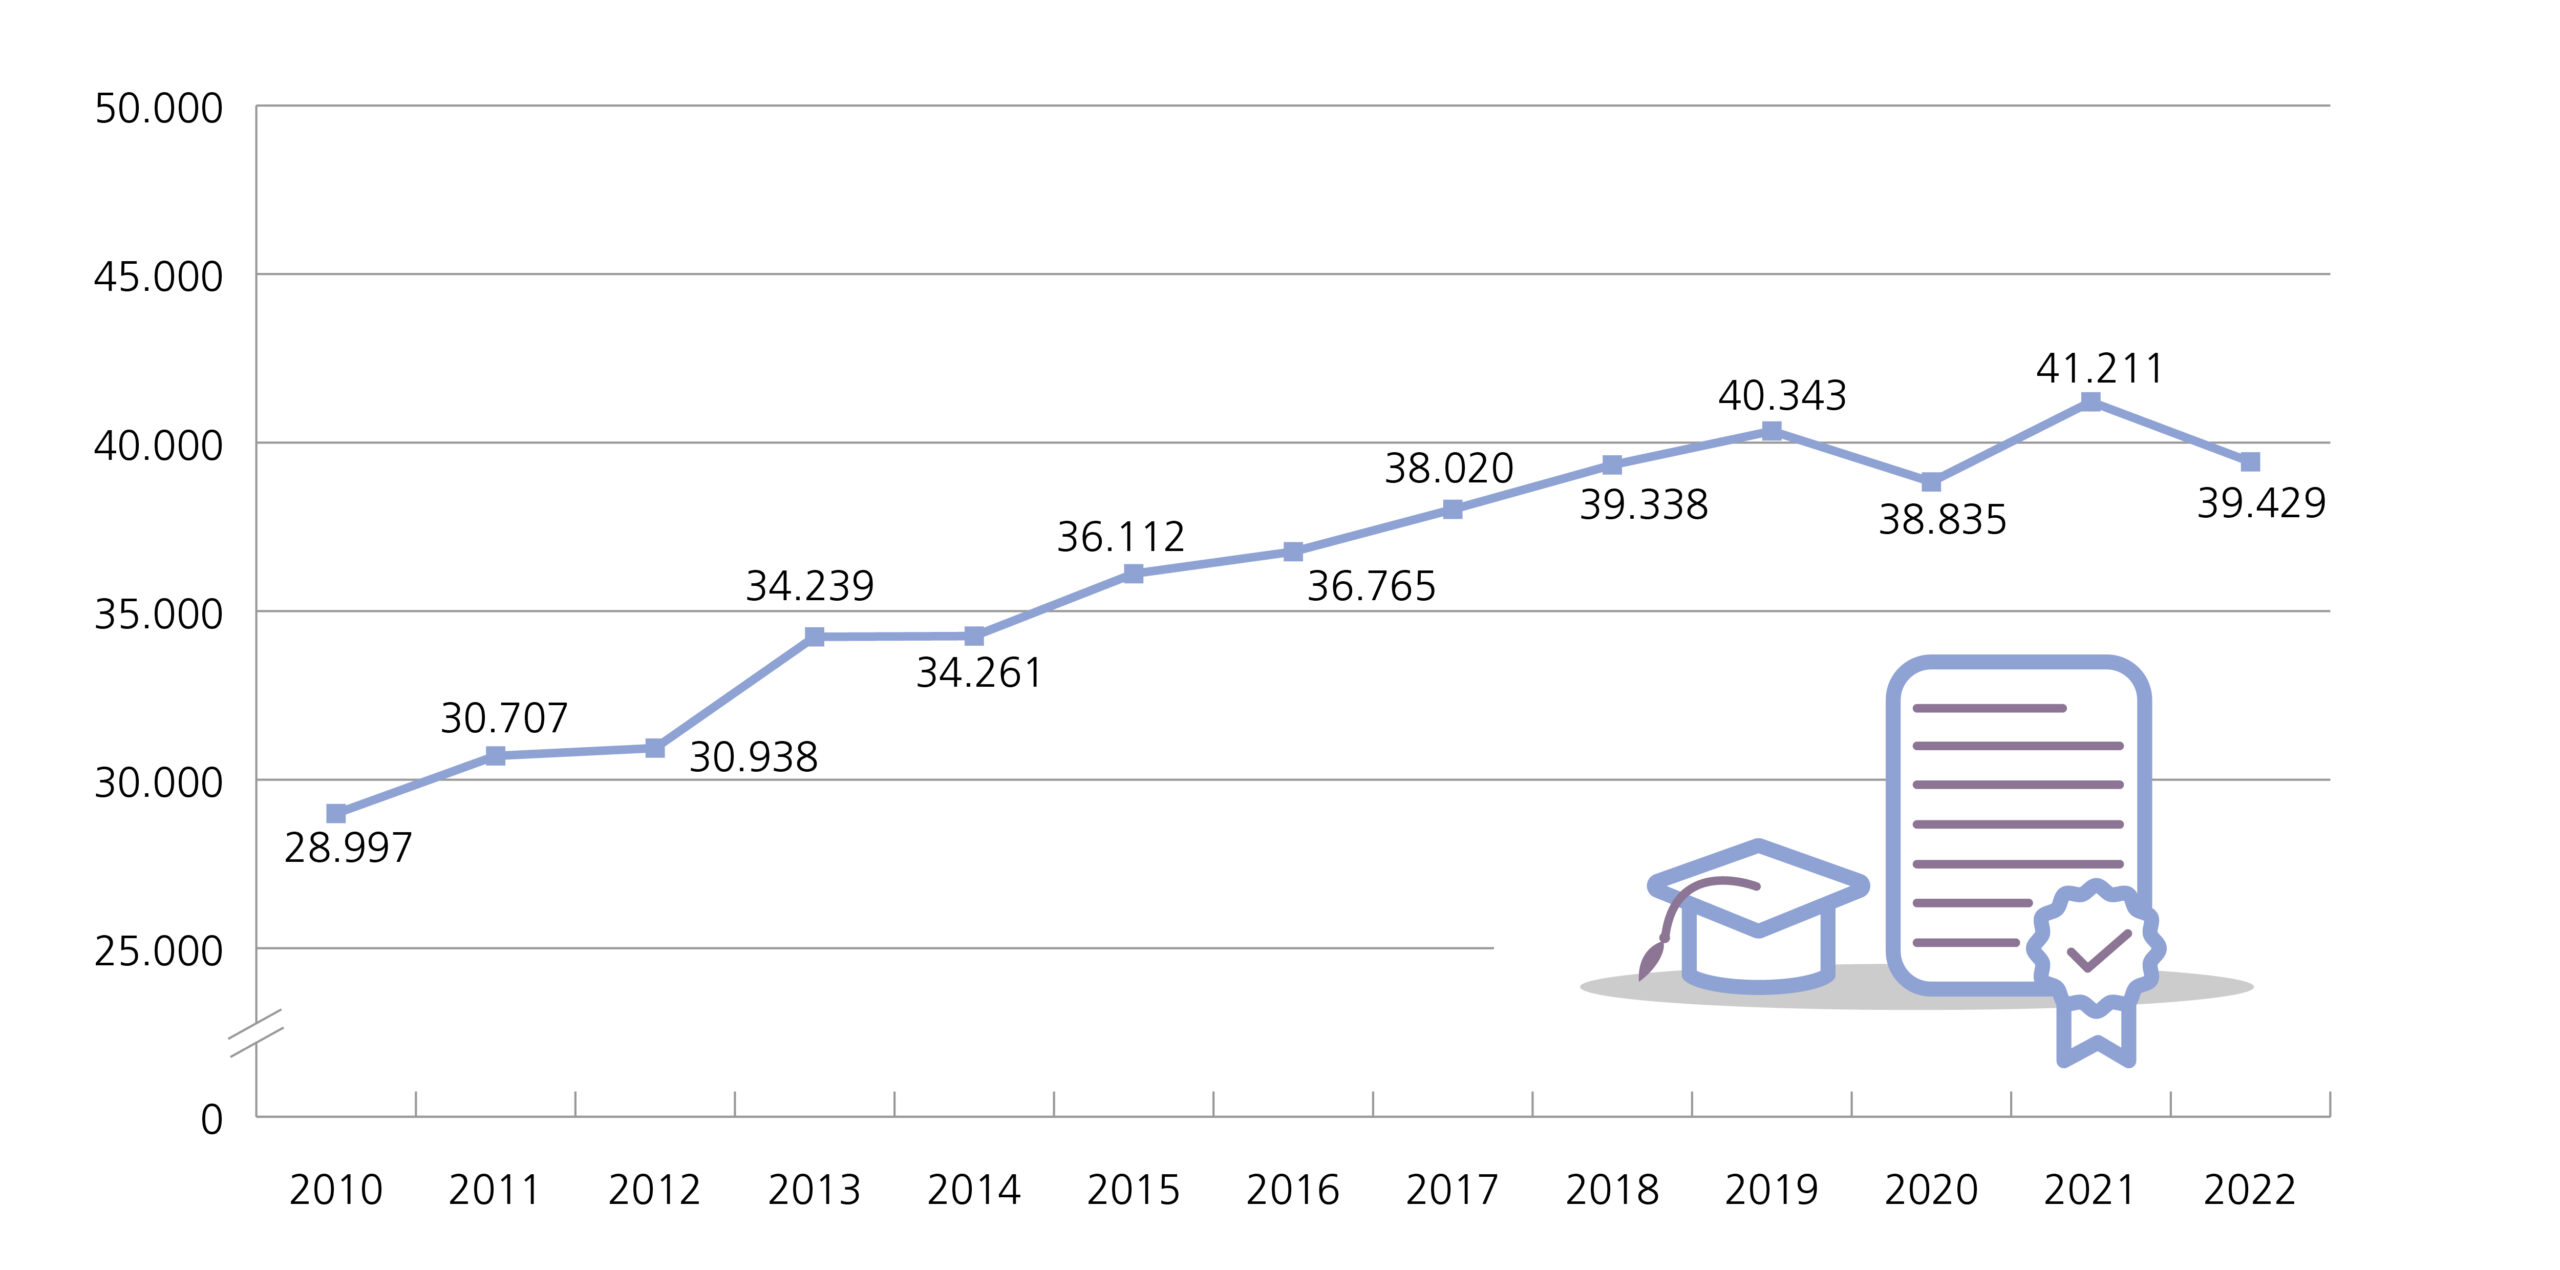 Die Zahl der bestandenen Prüfungen stieg zwischen den Prüfungsjahren 2010 und 2019 von 28.997 auf 40.343 kontinuierlich an und ging im Prüfungsjahr 2020 auf 38.835 zurück. Auf einen Anstieg im Prüfungsjahr 2021 (41.211) folgte ein erneuter Rückgang im Prüfungsjahr 2022 (39.429).